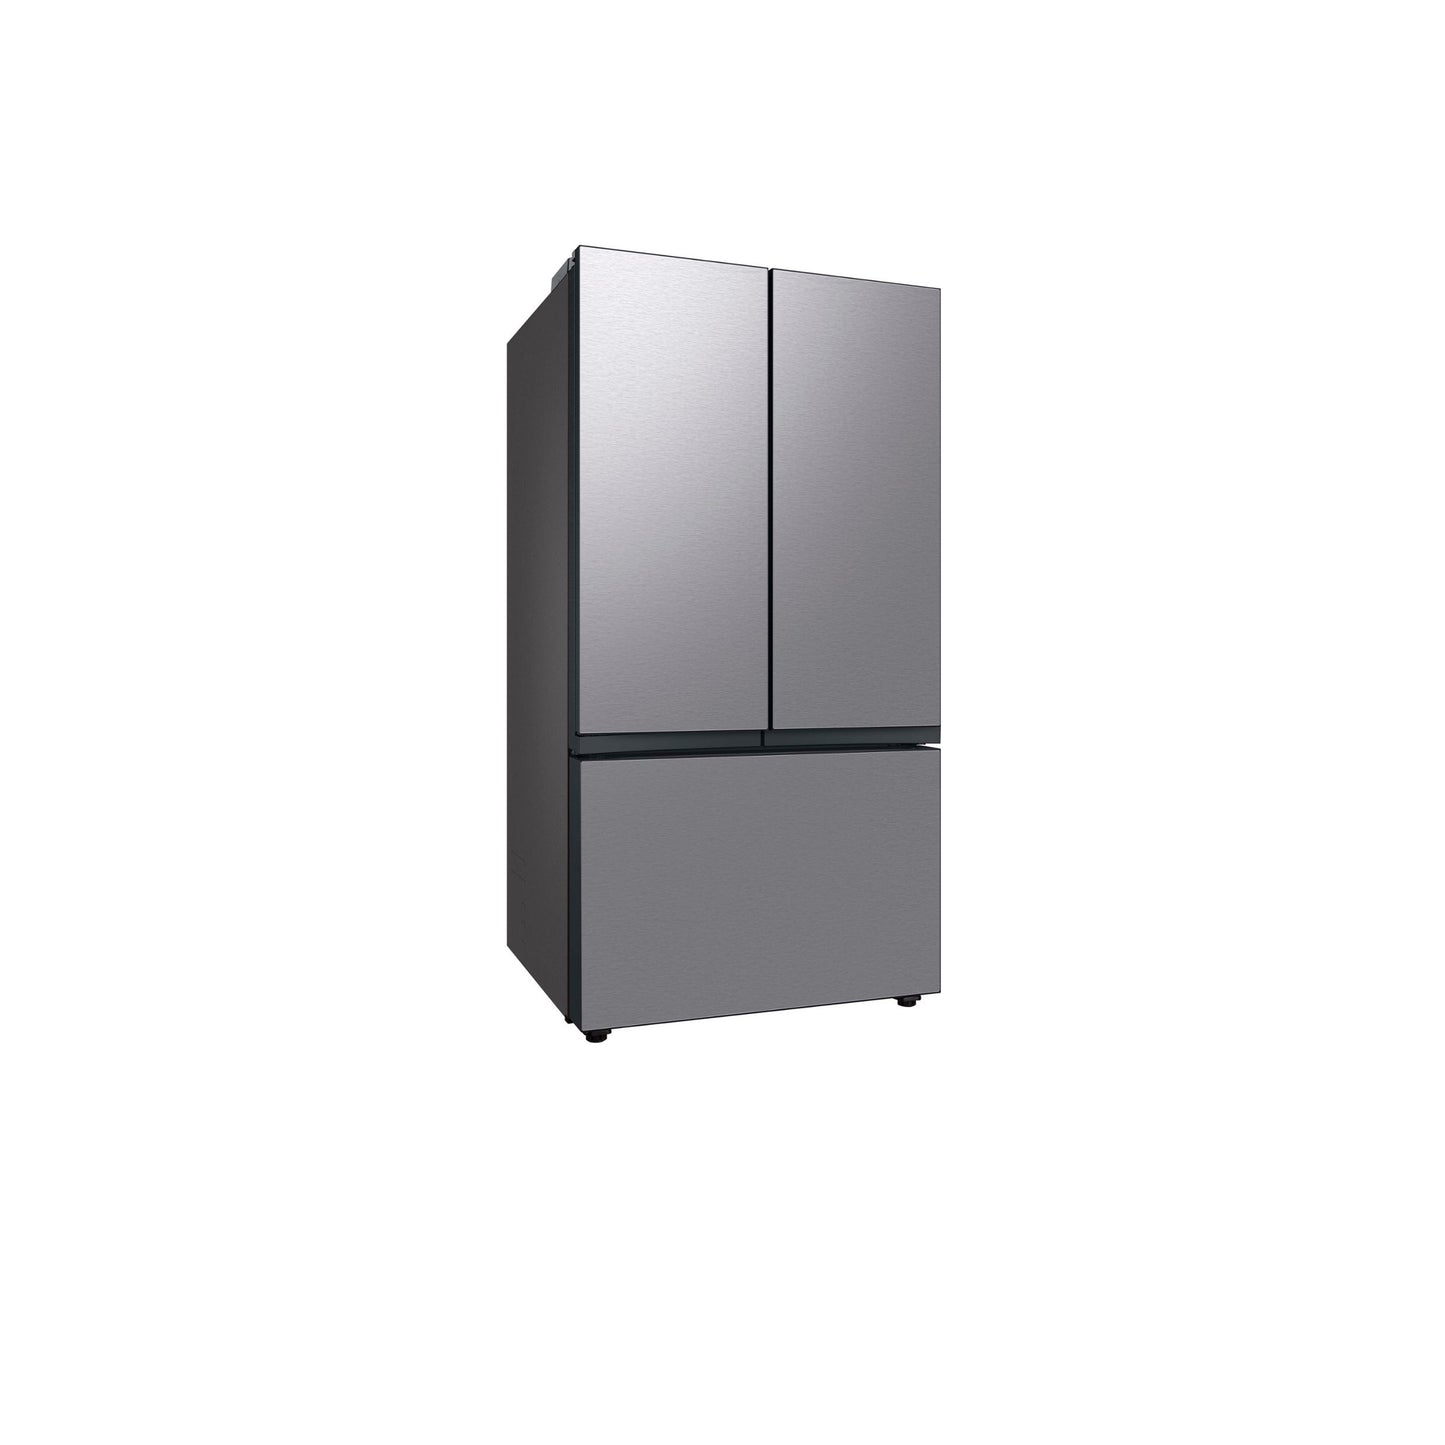 ثلاجة مخصصة بباب فرنسي بثلاثة أبواب (30 قدمًا مكعبًا) مزودة بمركز المشروبات™ من الفولاذ المقاوم للصدأ. 